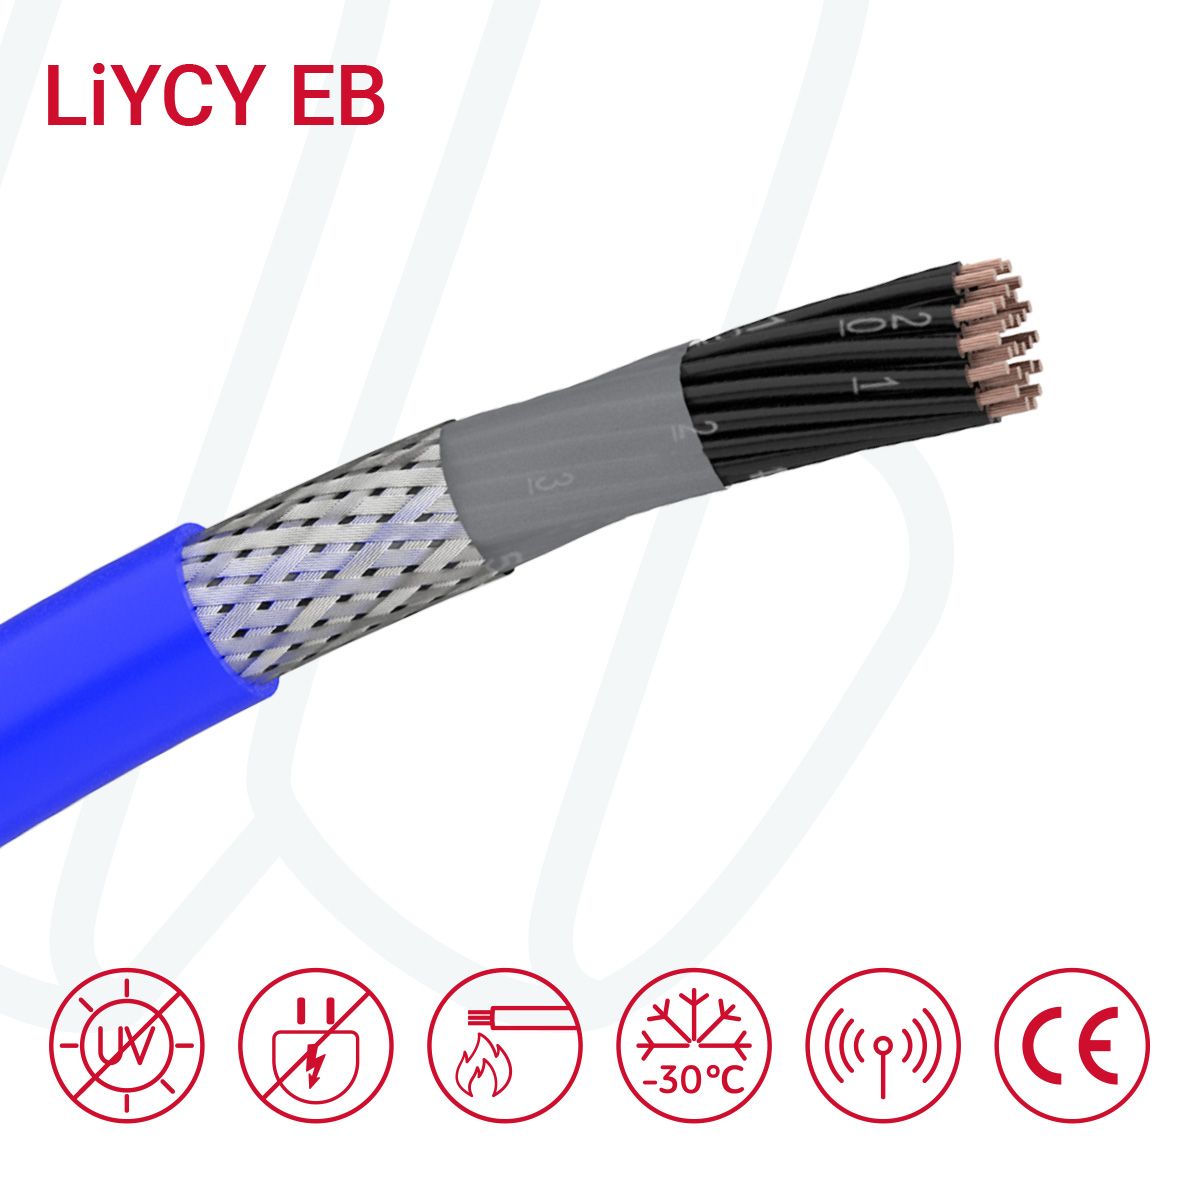 Кабель LiYCY/EB-OZ 18X0.75 синій RAL 5015, 18, 0.75